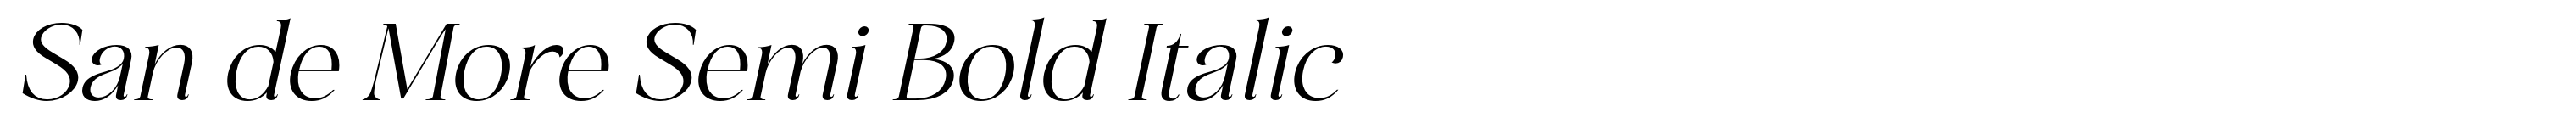 San de More Semi Bold Italic